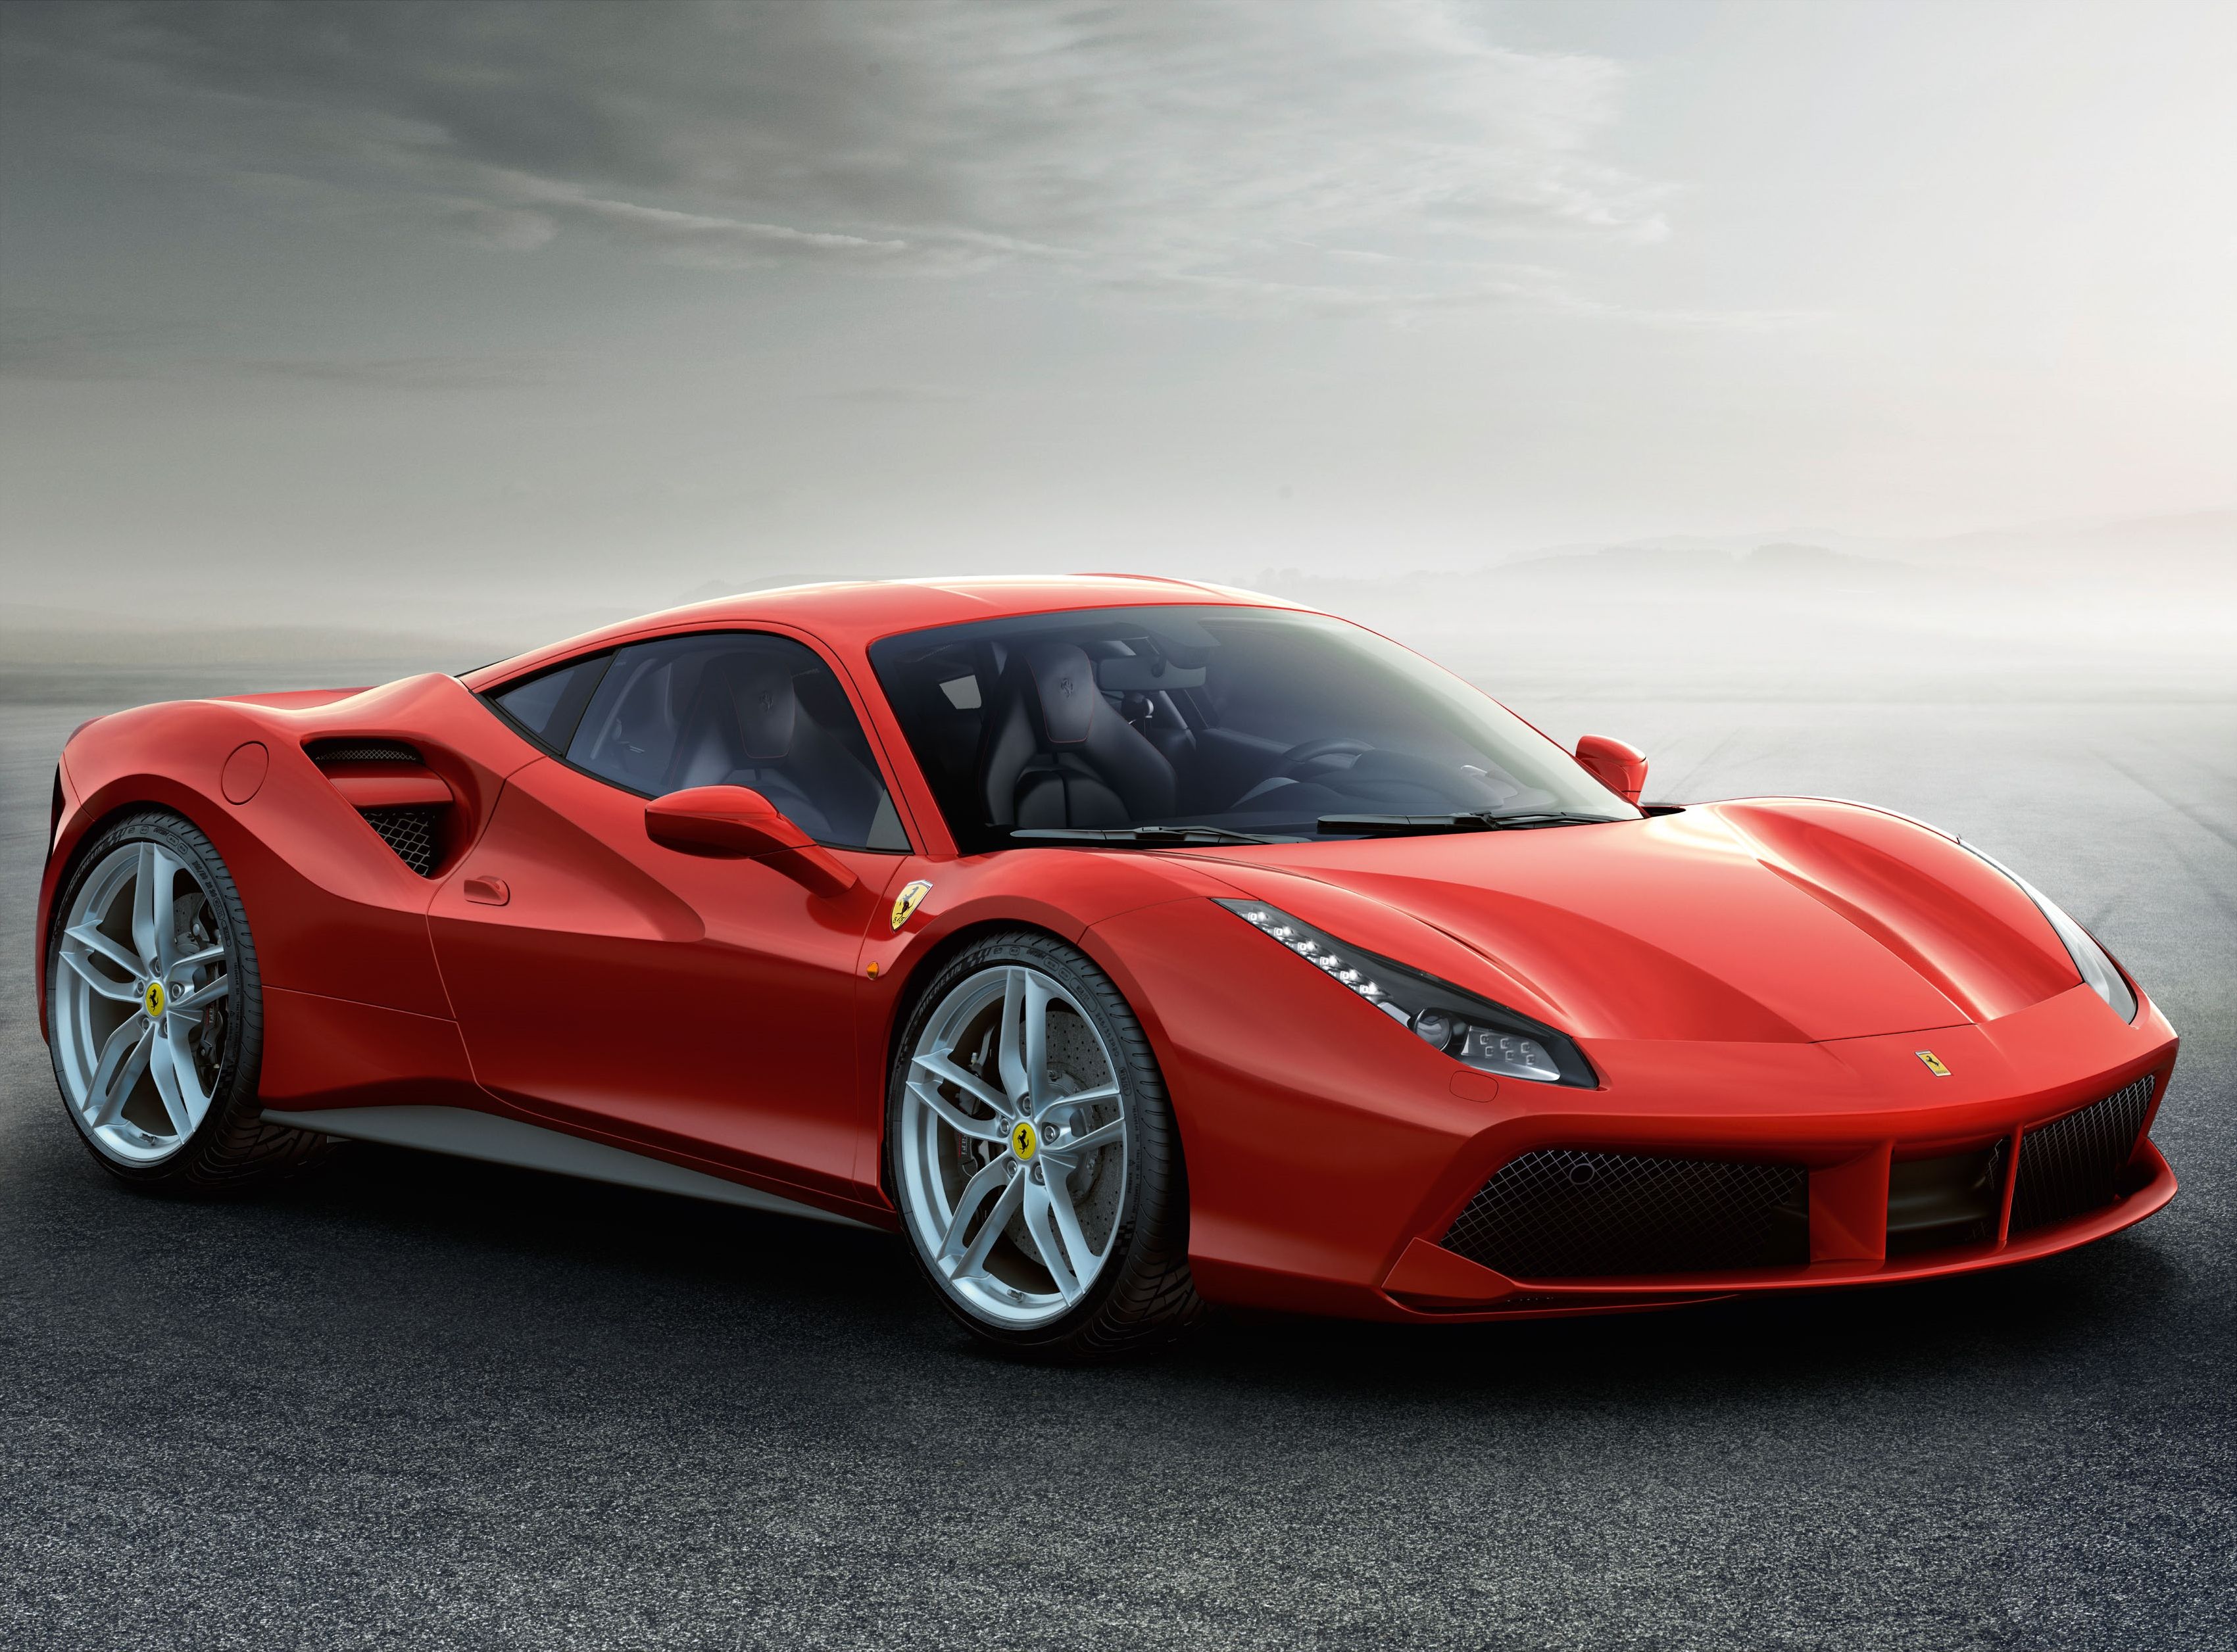 Descarga gratuita de fondos de pantalla Ferrari 488 GTB HD